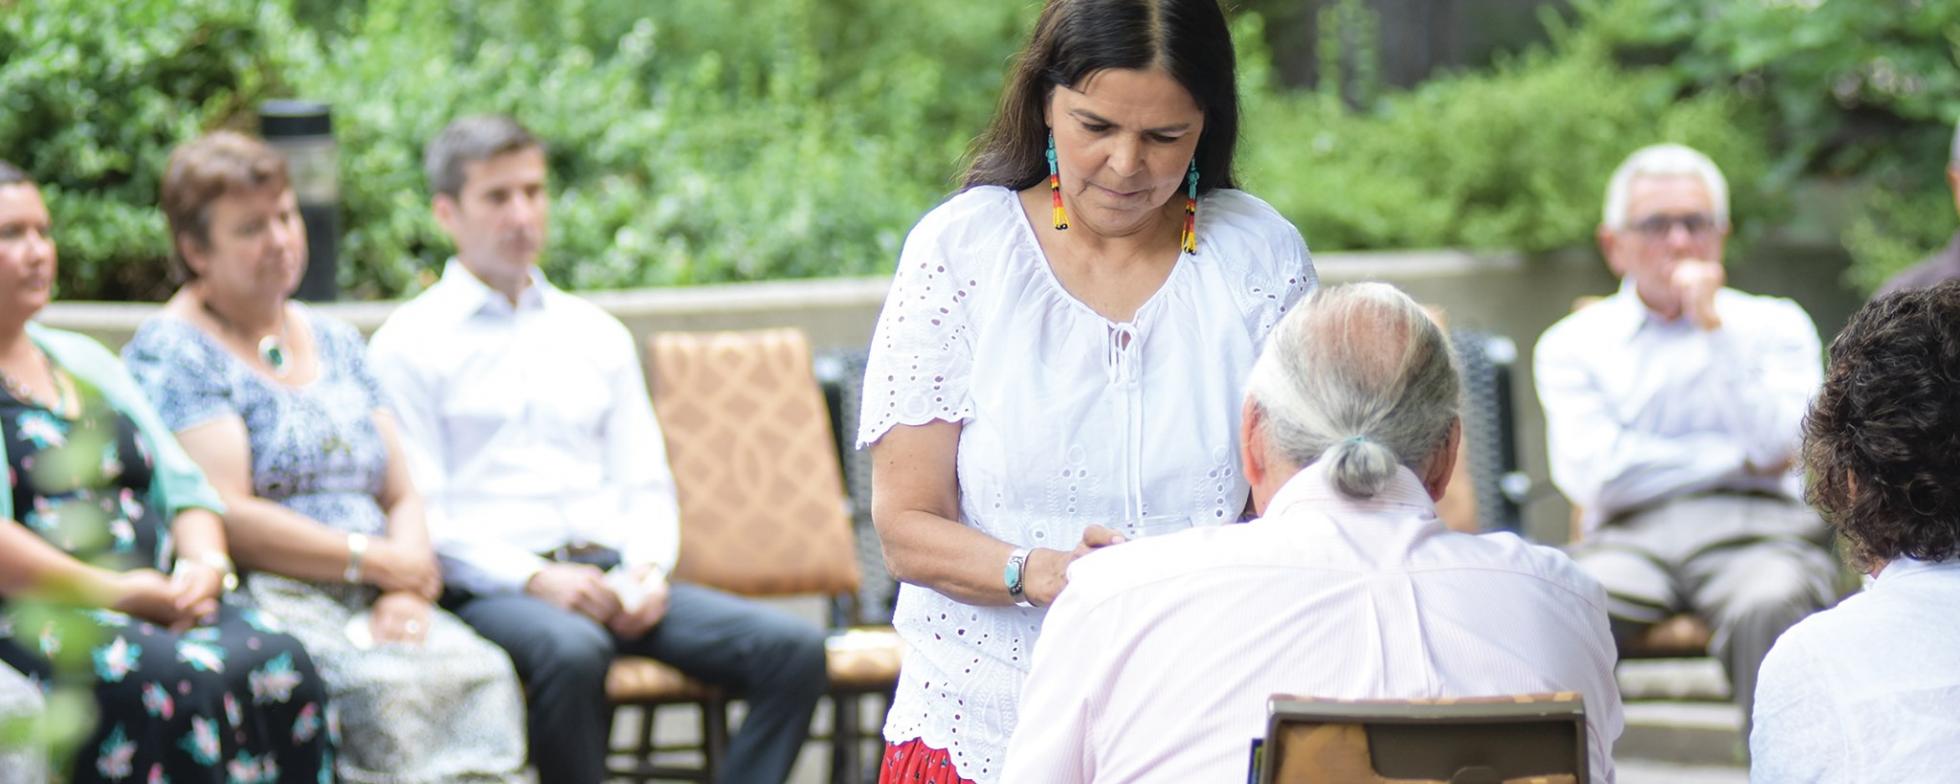 EN: A women is standing in front of a seated elderly man FR: Une femme se tient devant un homme âgé assis